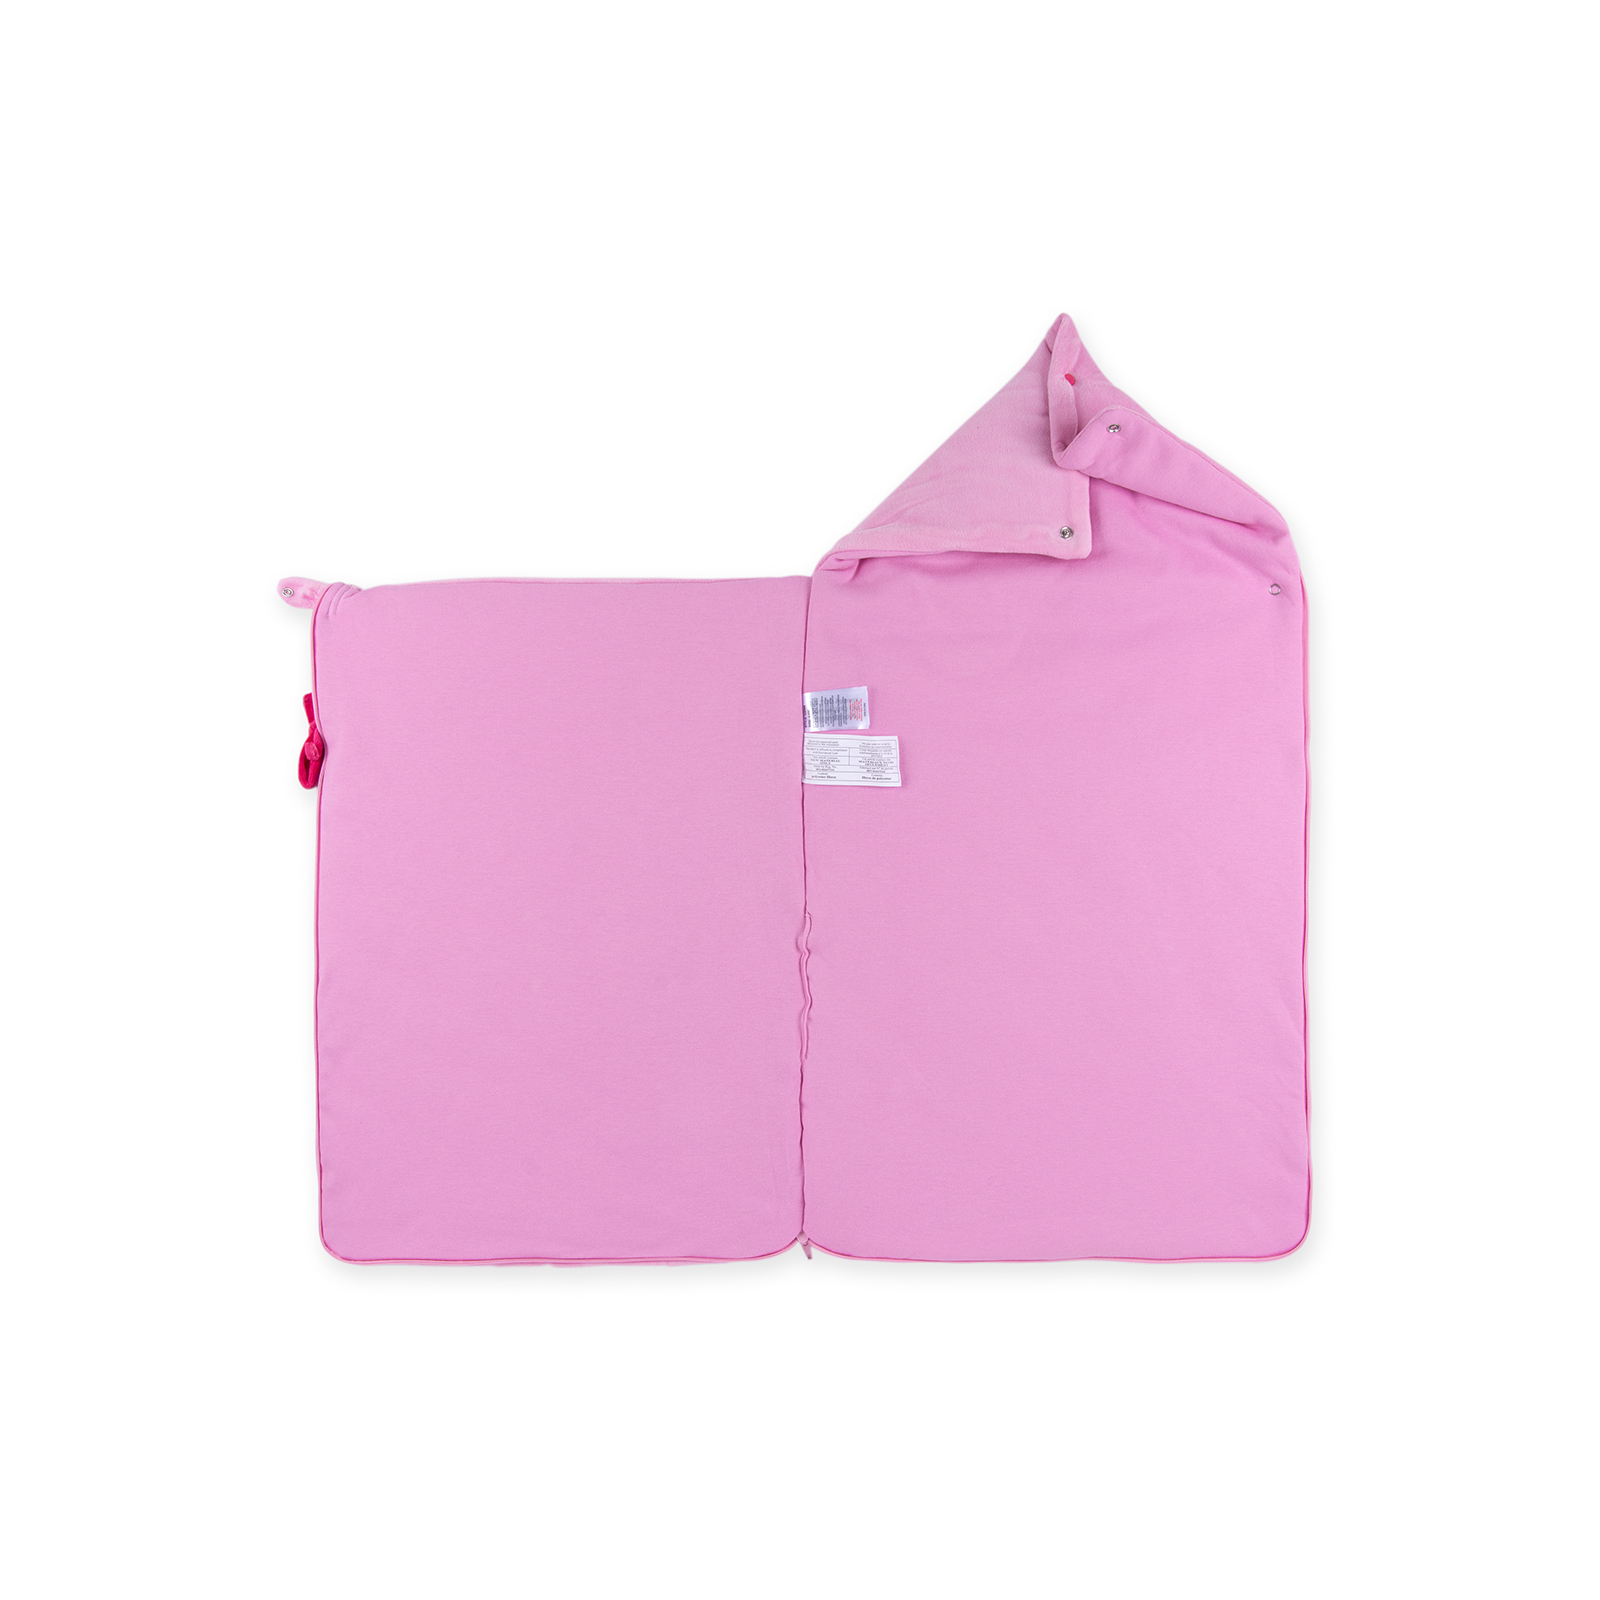 Спальный конверт Luvena Fortuna розовый многофункциональный с рисунком слоненка (G8988) изображение 3